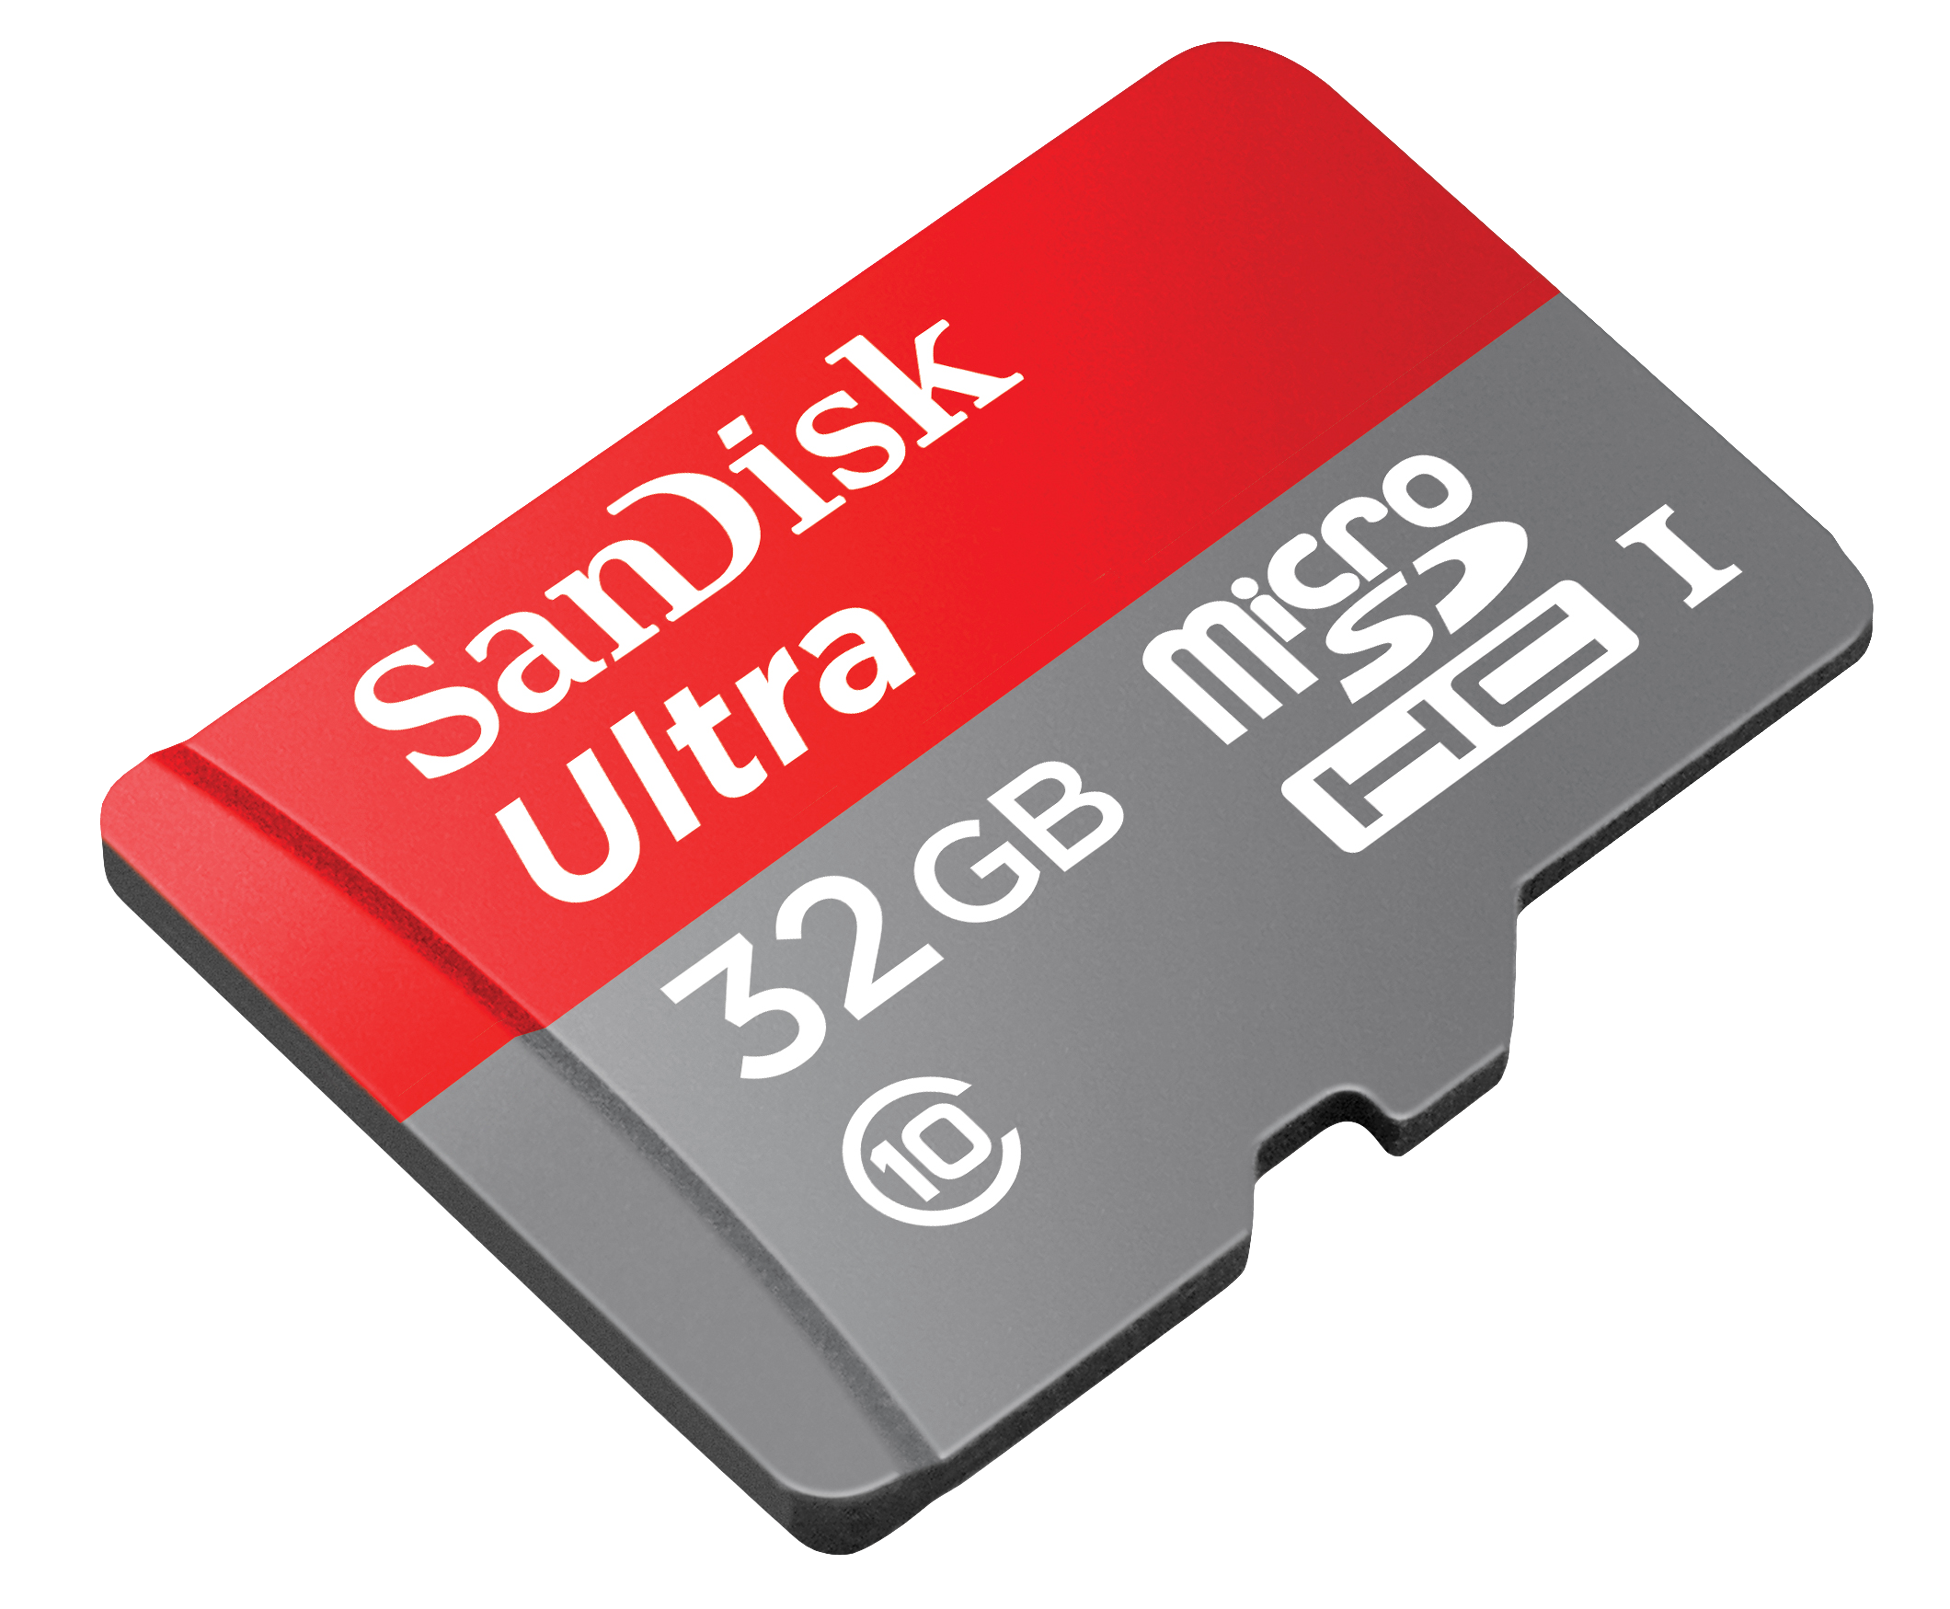 SanDisk Memory Card PNG Image